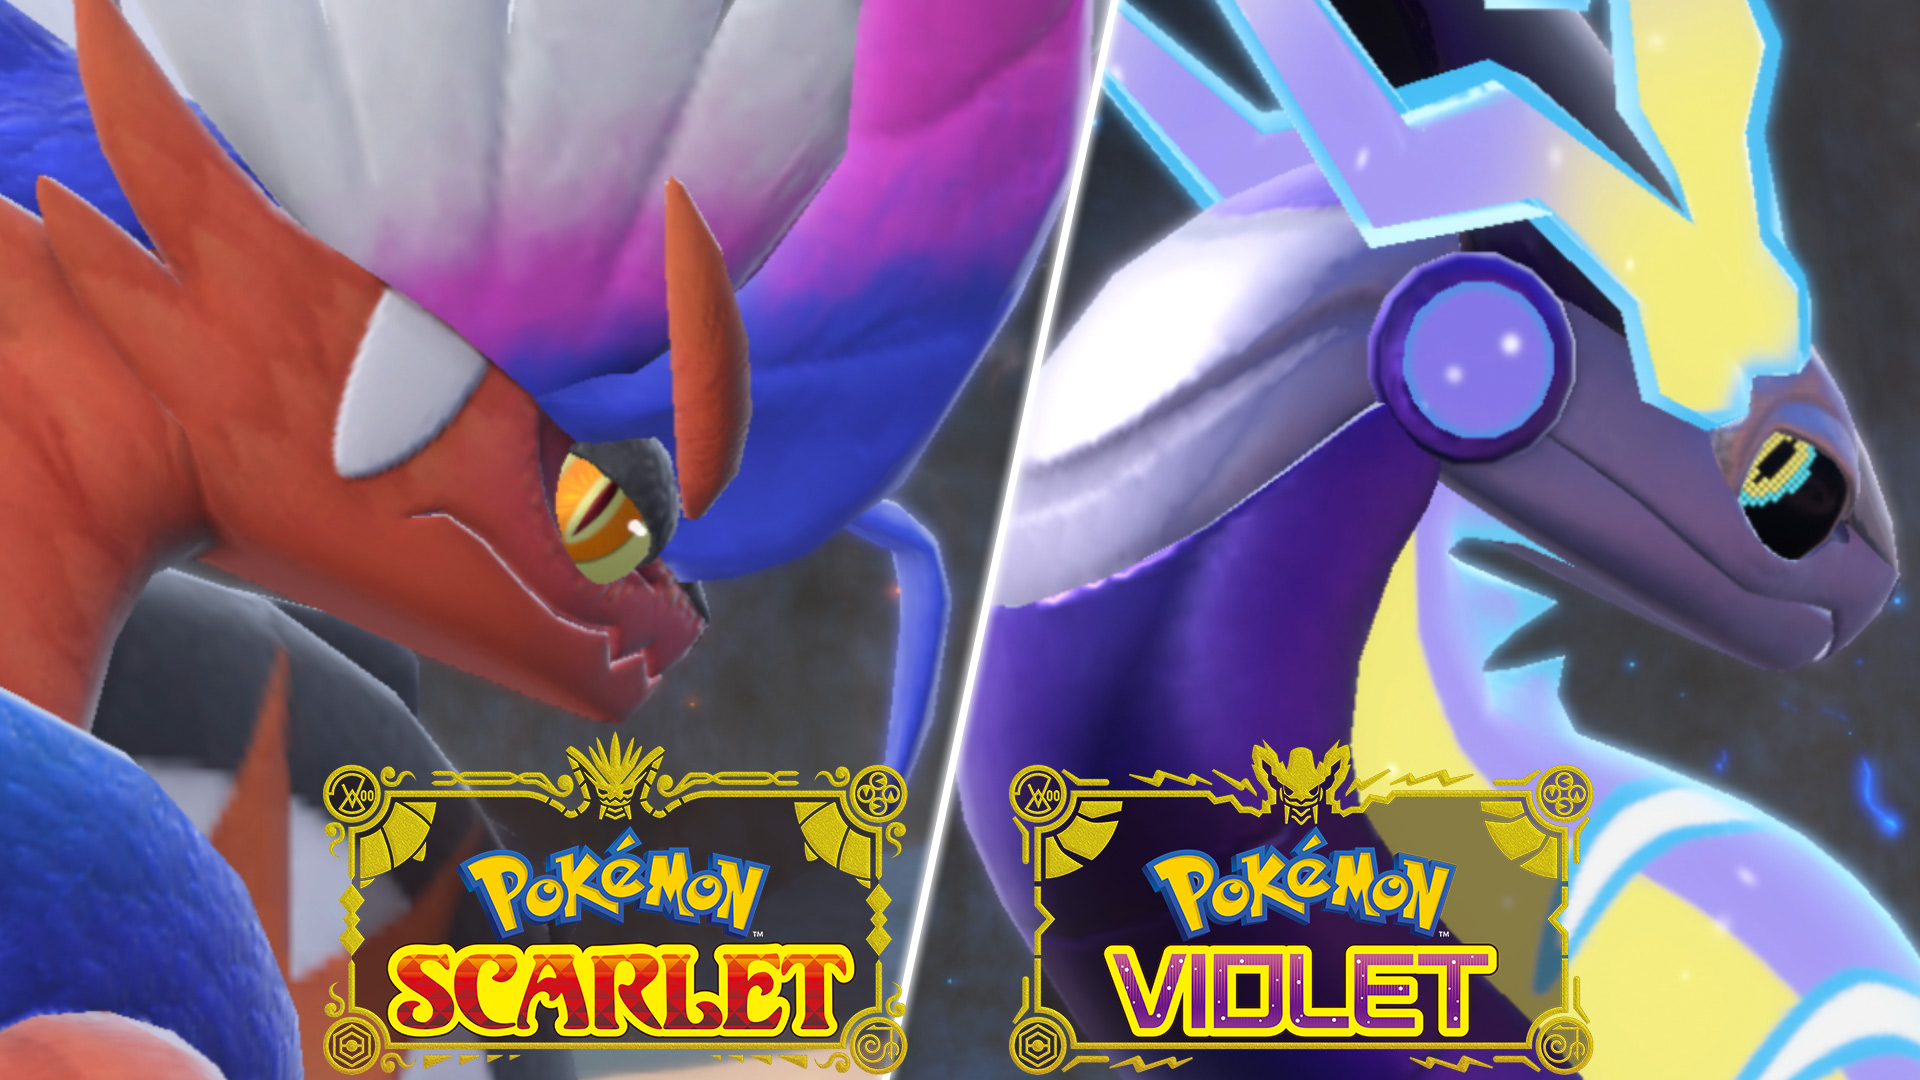 Gameplay - Pokémon Scarlet and Pokémon Violet